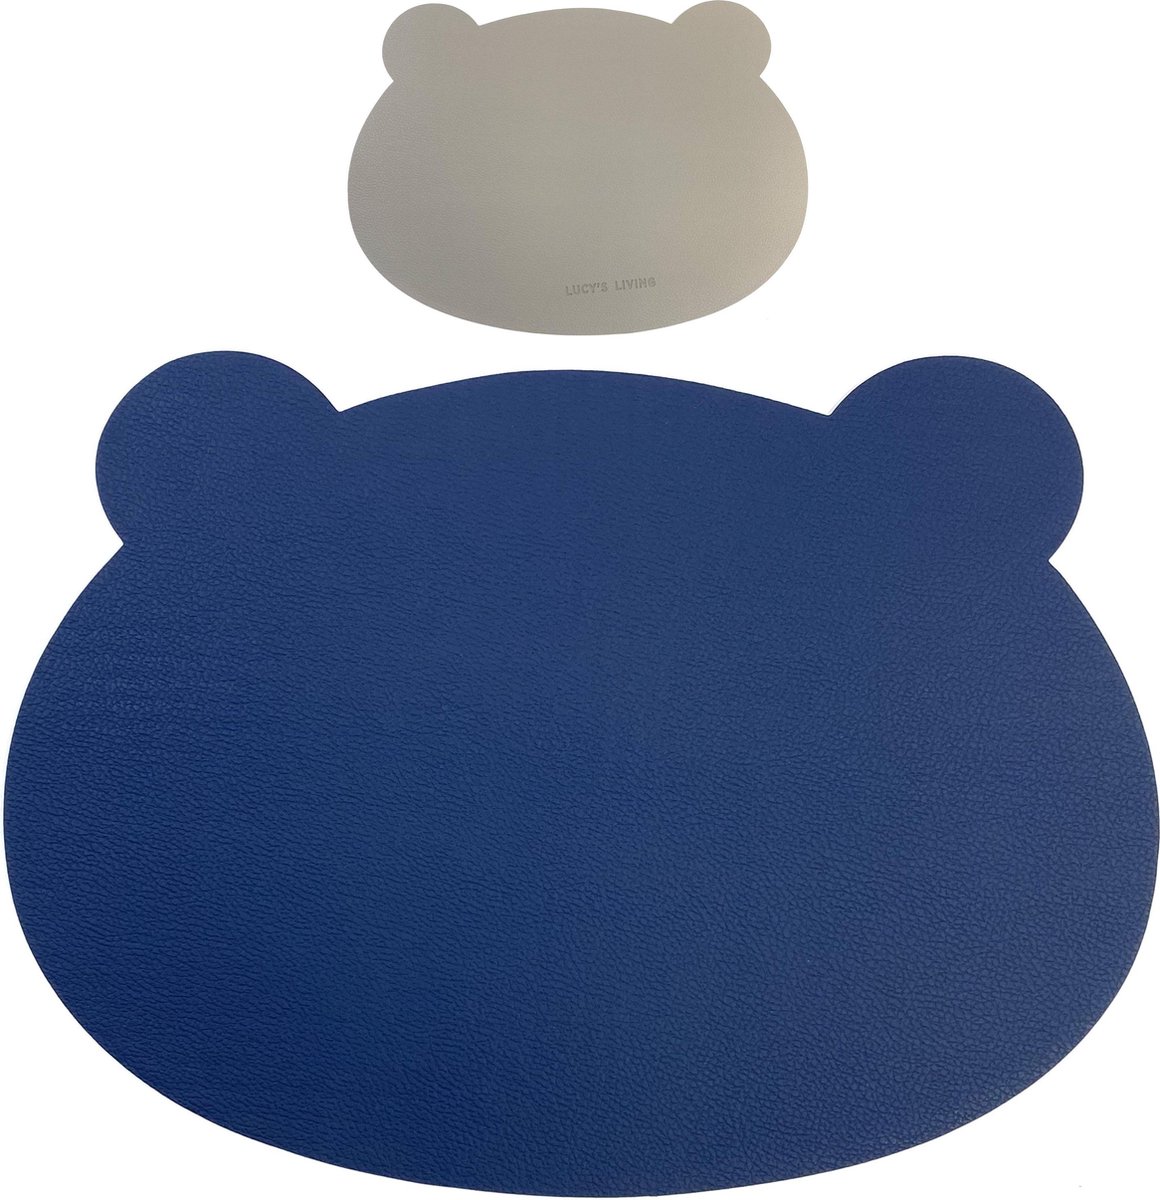 Lucy's Living Luxe Placemat BEAR - dubbelzijdig - blauw/grijs - 37 x 27 cm - kunstleer - kunststof - kinderen